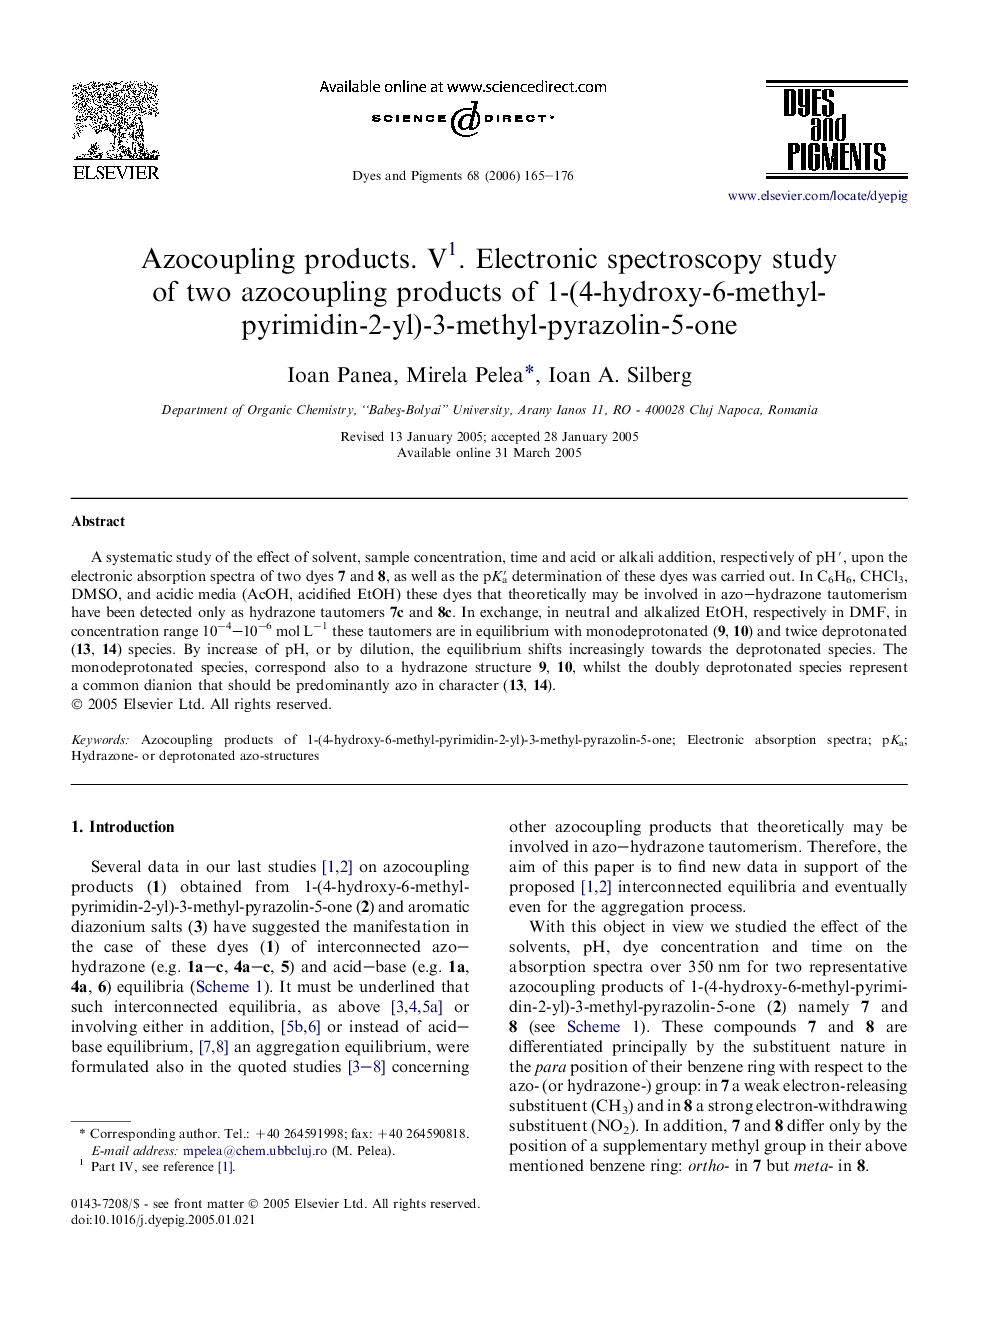 Azocoupling products. V1. Electronic spectroscopy study of two azocoupling products of 1-(4-hydroxy-6-methyl-pyrimidin-2-yl)-3-methyl-pyrazolin-5-one